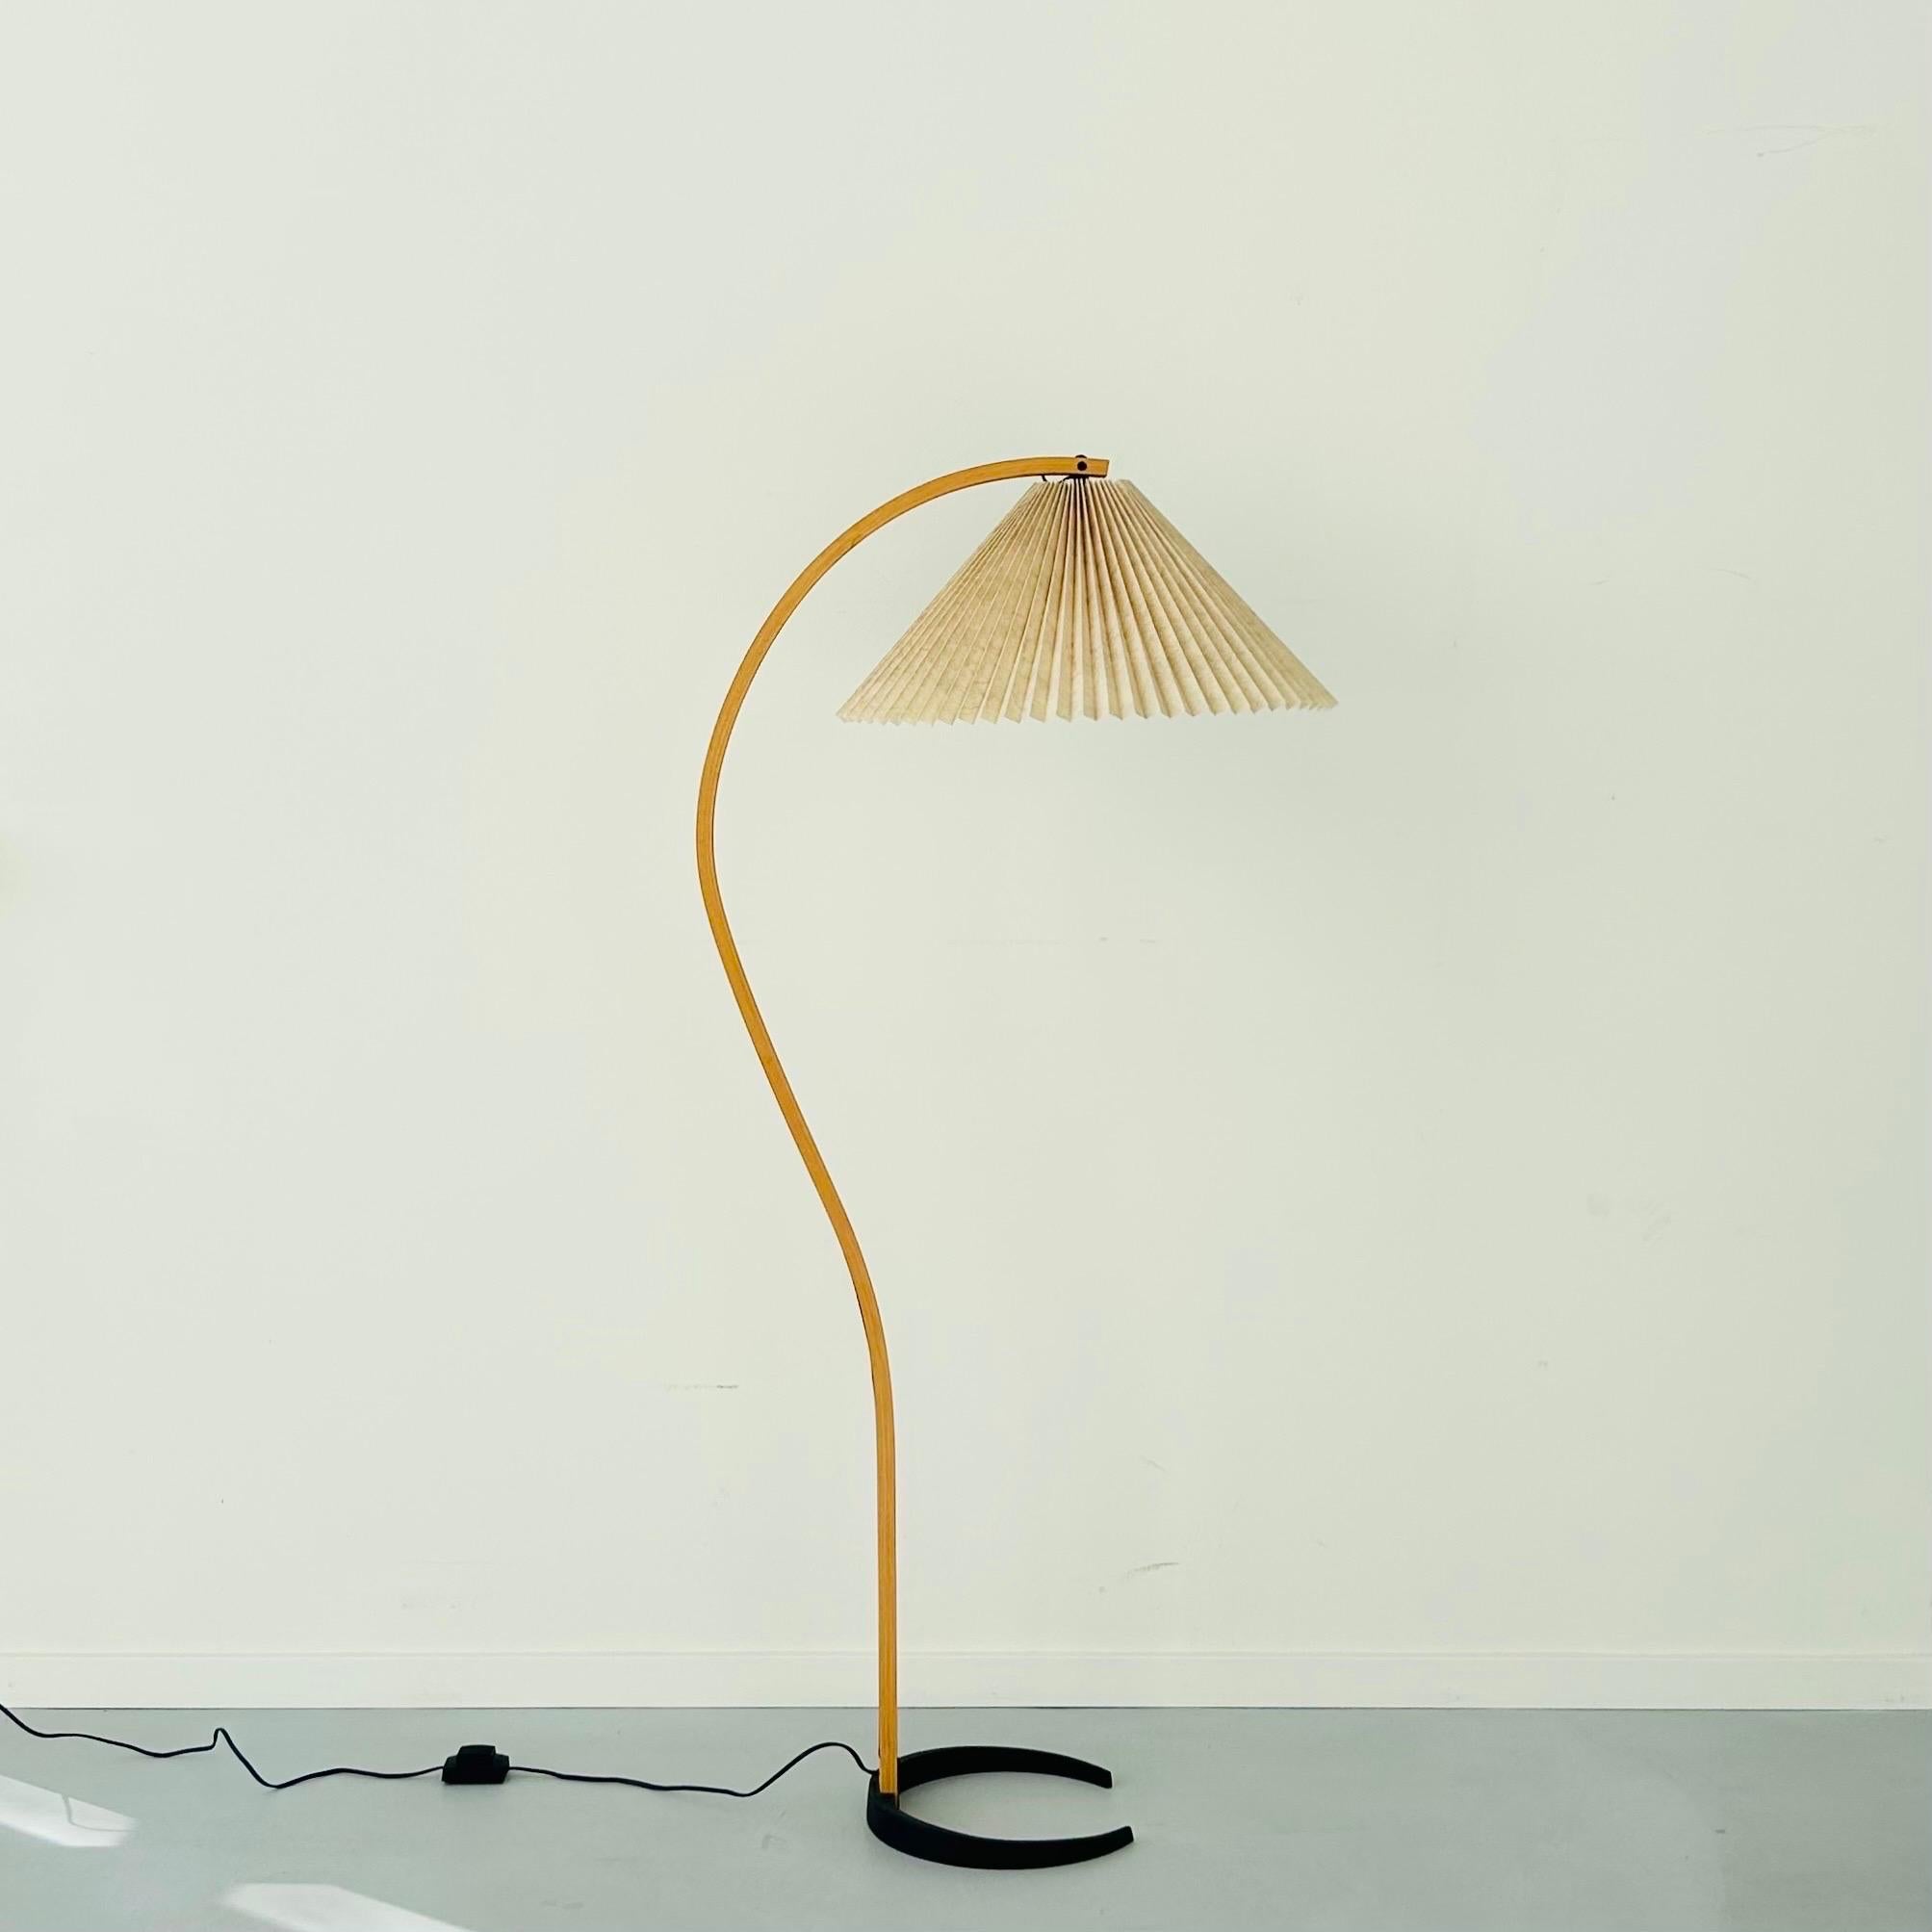 Un lampadaire danois original de Mads Caprani qui n'a jamais été utilisé. Bois courbé sur un pied en forme de croissant en fonte. Le style s'appelle Timberline no. 840 en bois de hêtre. Son design frappant, à la fois quintessence des années 1970 et